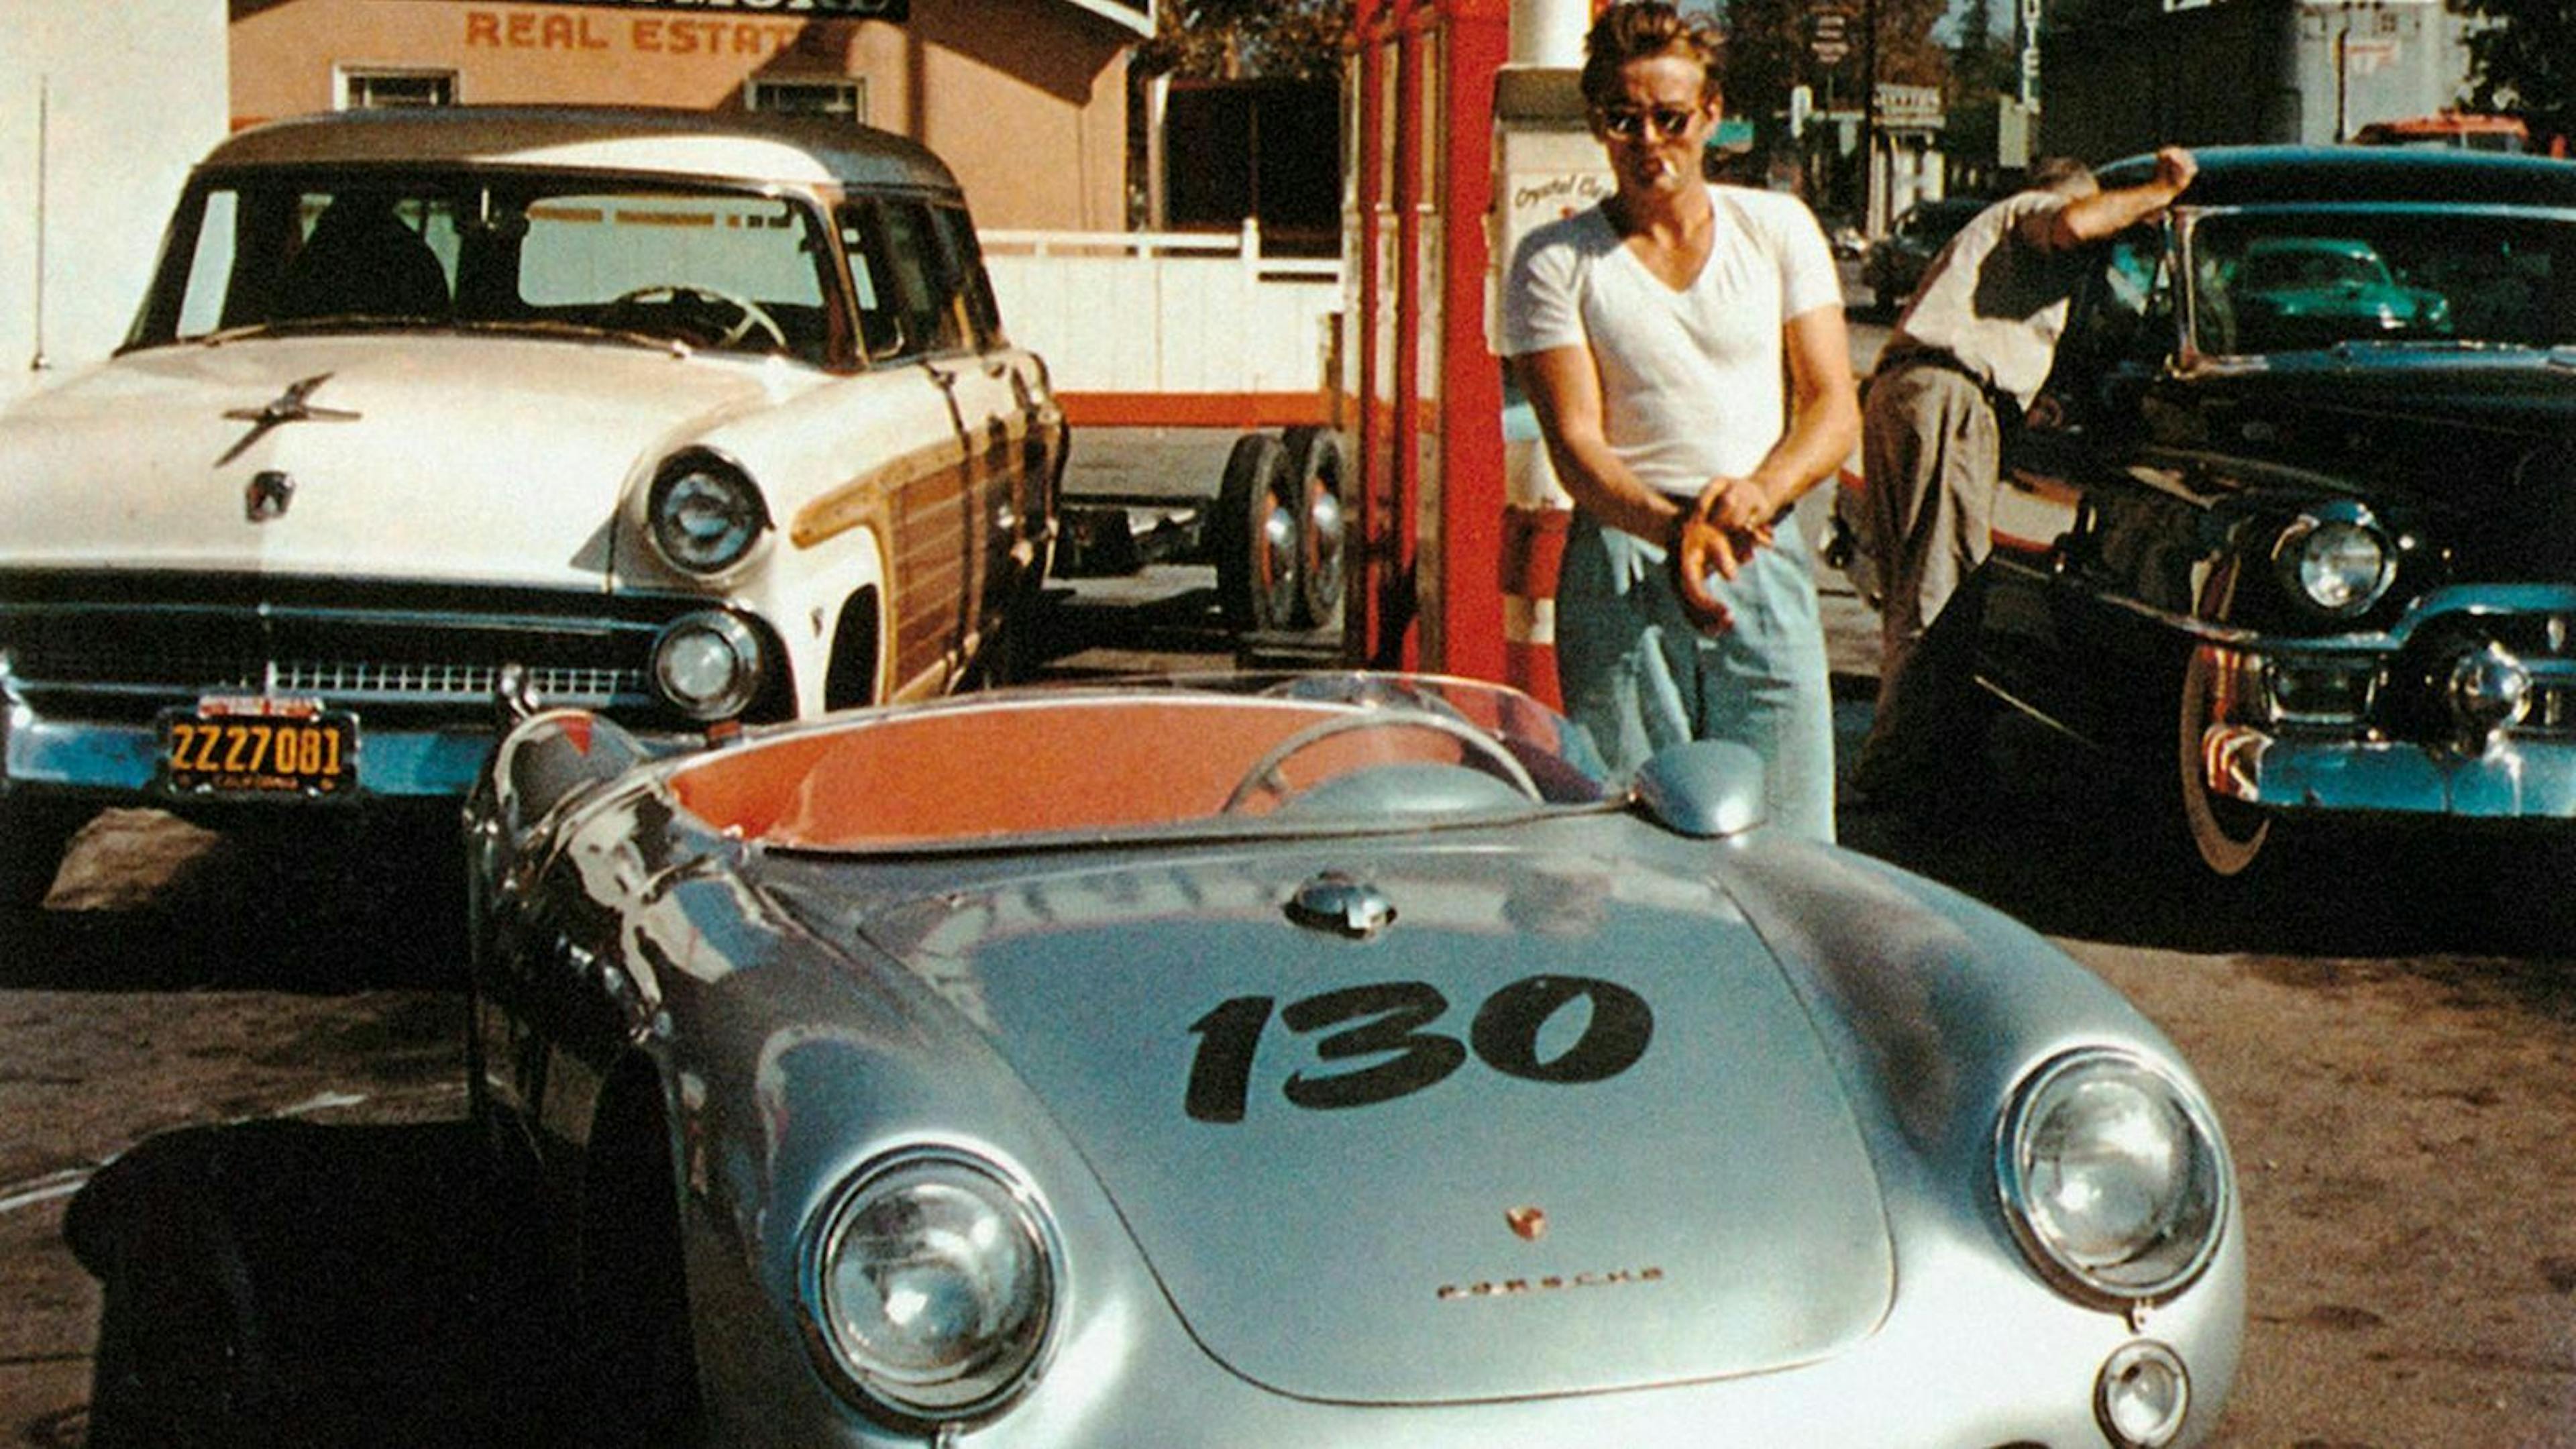 der Porsche in Caprio Optik